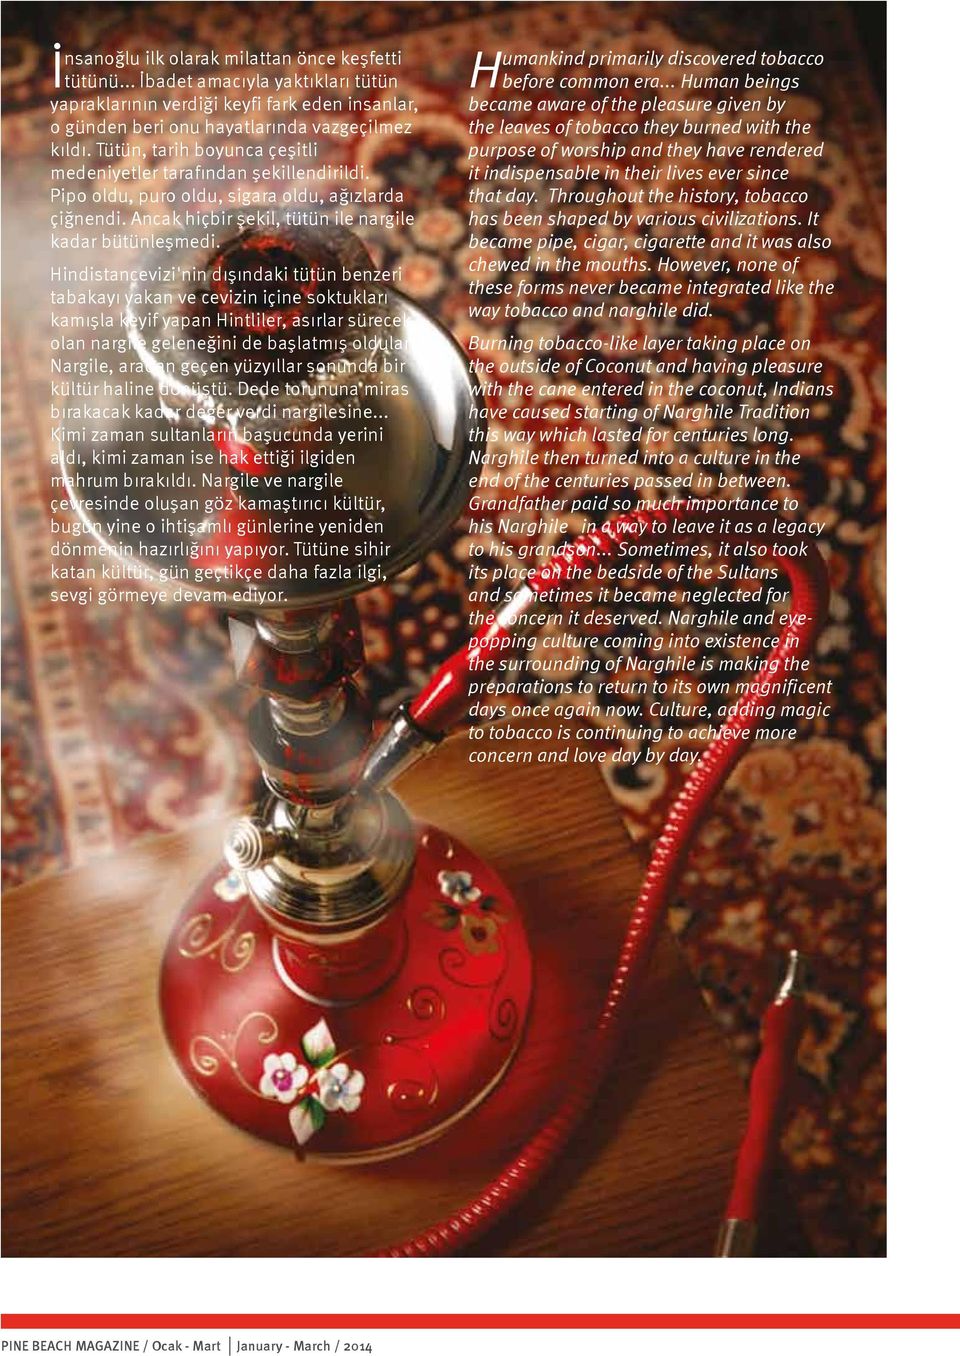 Hindistancevizi'nin dışındaki tütün benzeri tabakayı yakan ve cevizin içine soktukları kamışla keyif yapan Hintliler, asırlar sürecek olan nargile geleneğini de başlatmış oldular.